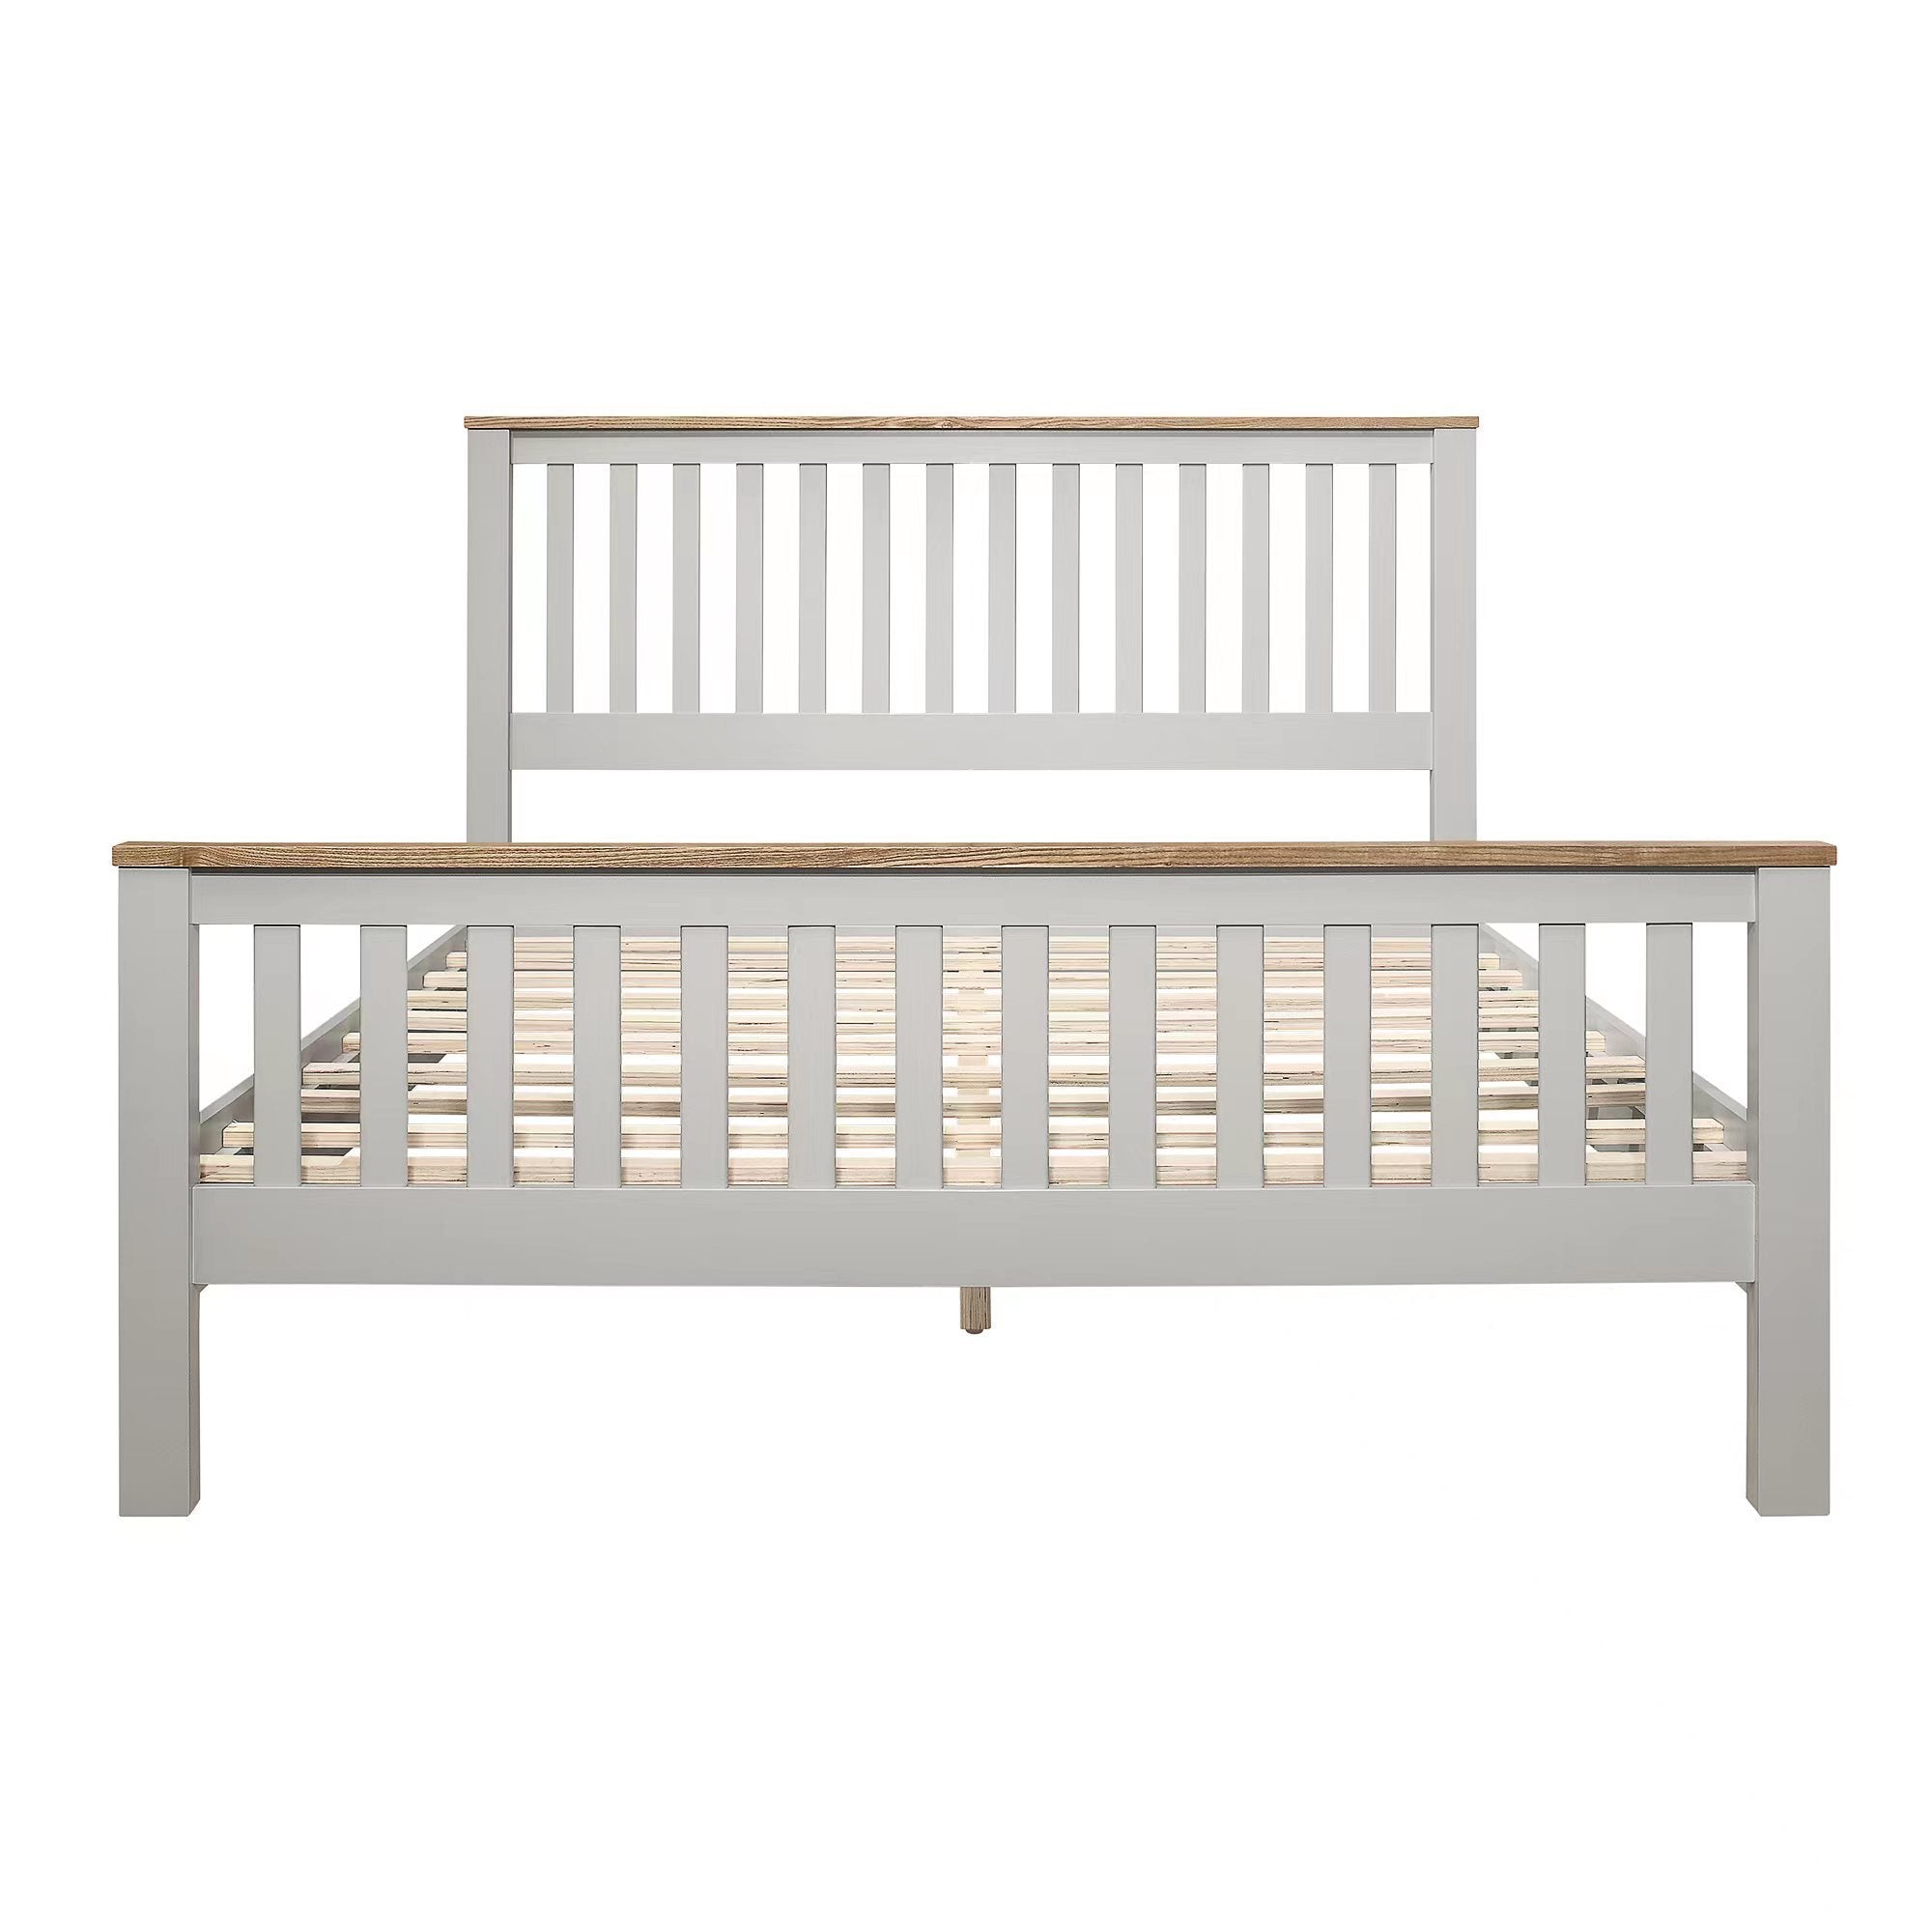 Best for Farmhouse Wooden Platform Bed Frame By: Alabama Beds